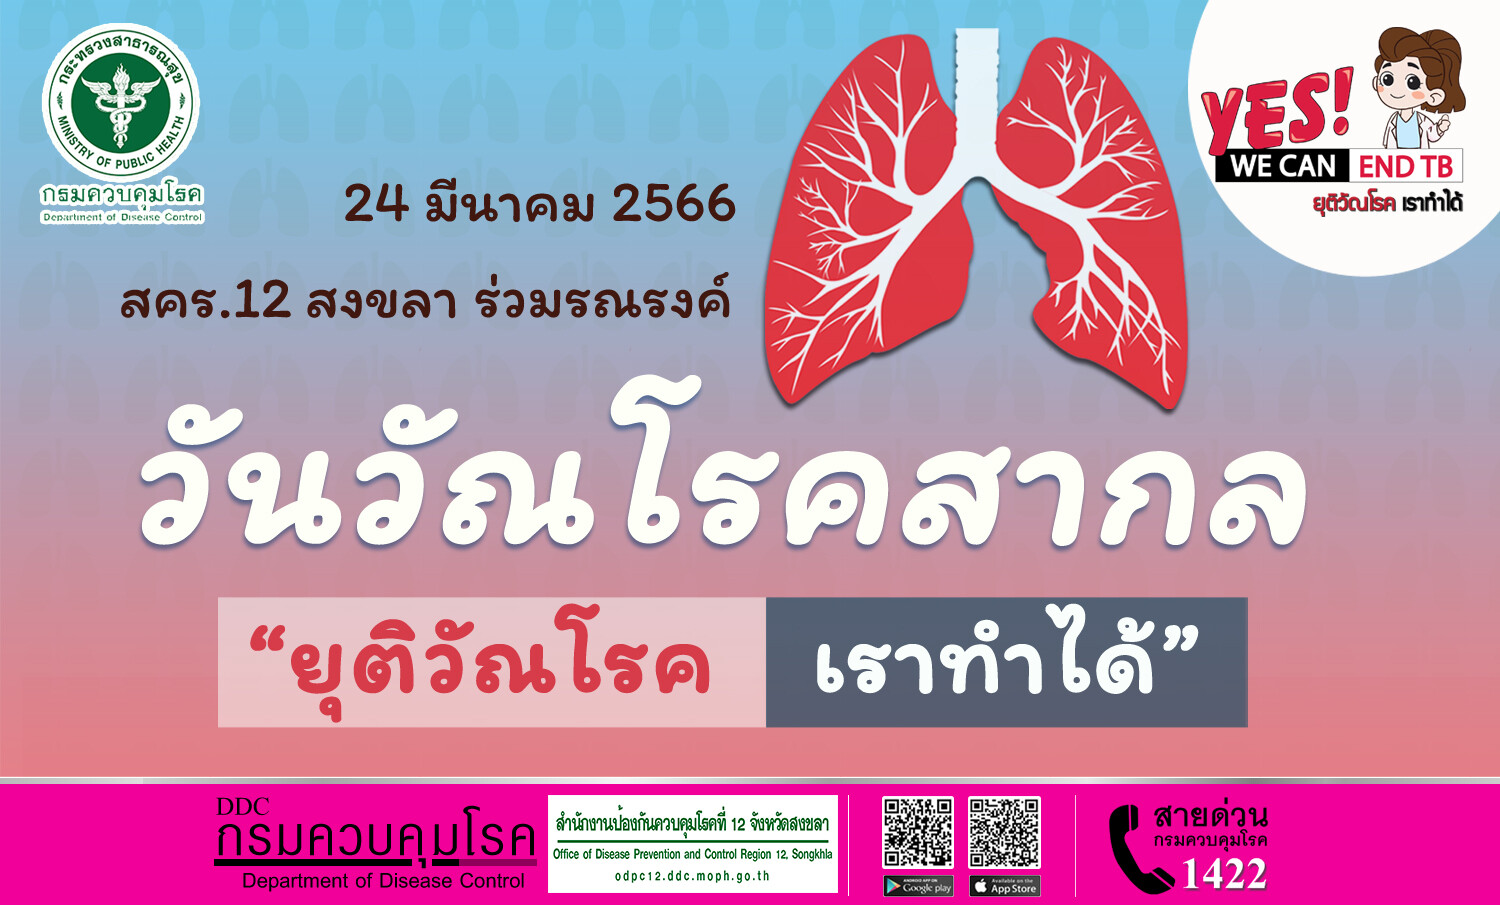 สคร.12 สงขลา ร่วมรณรงค์ วันวัณโรคสากล 24 มีนาคม 2566 " ยุติวัณโรค เราทำได้ " (Yes! We Can End TB)